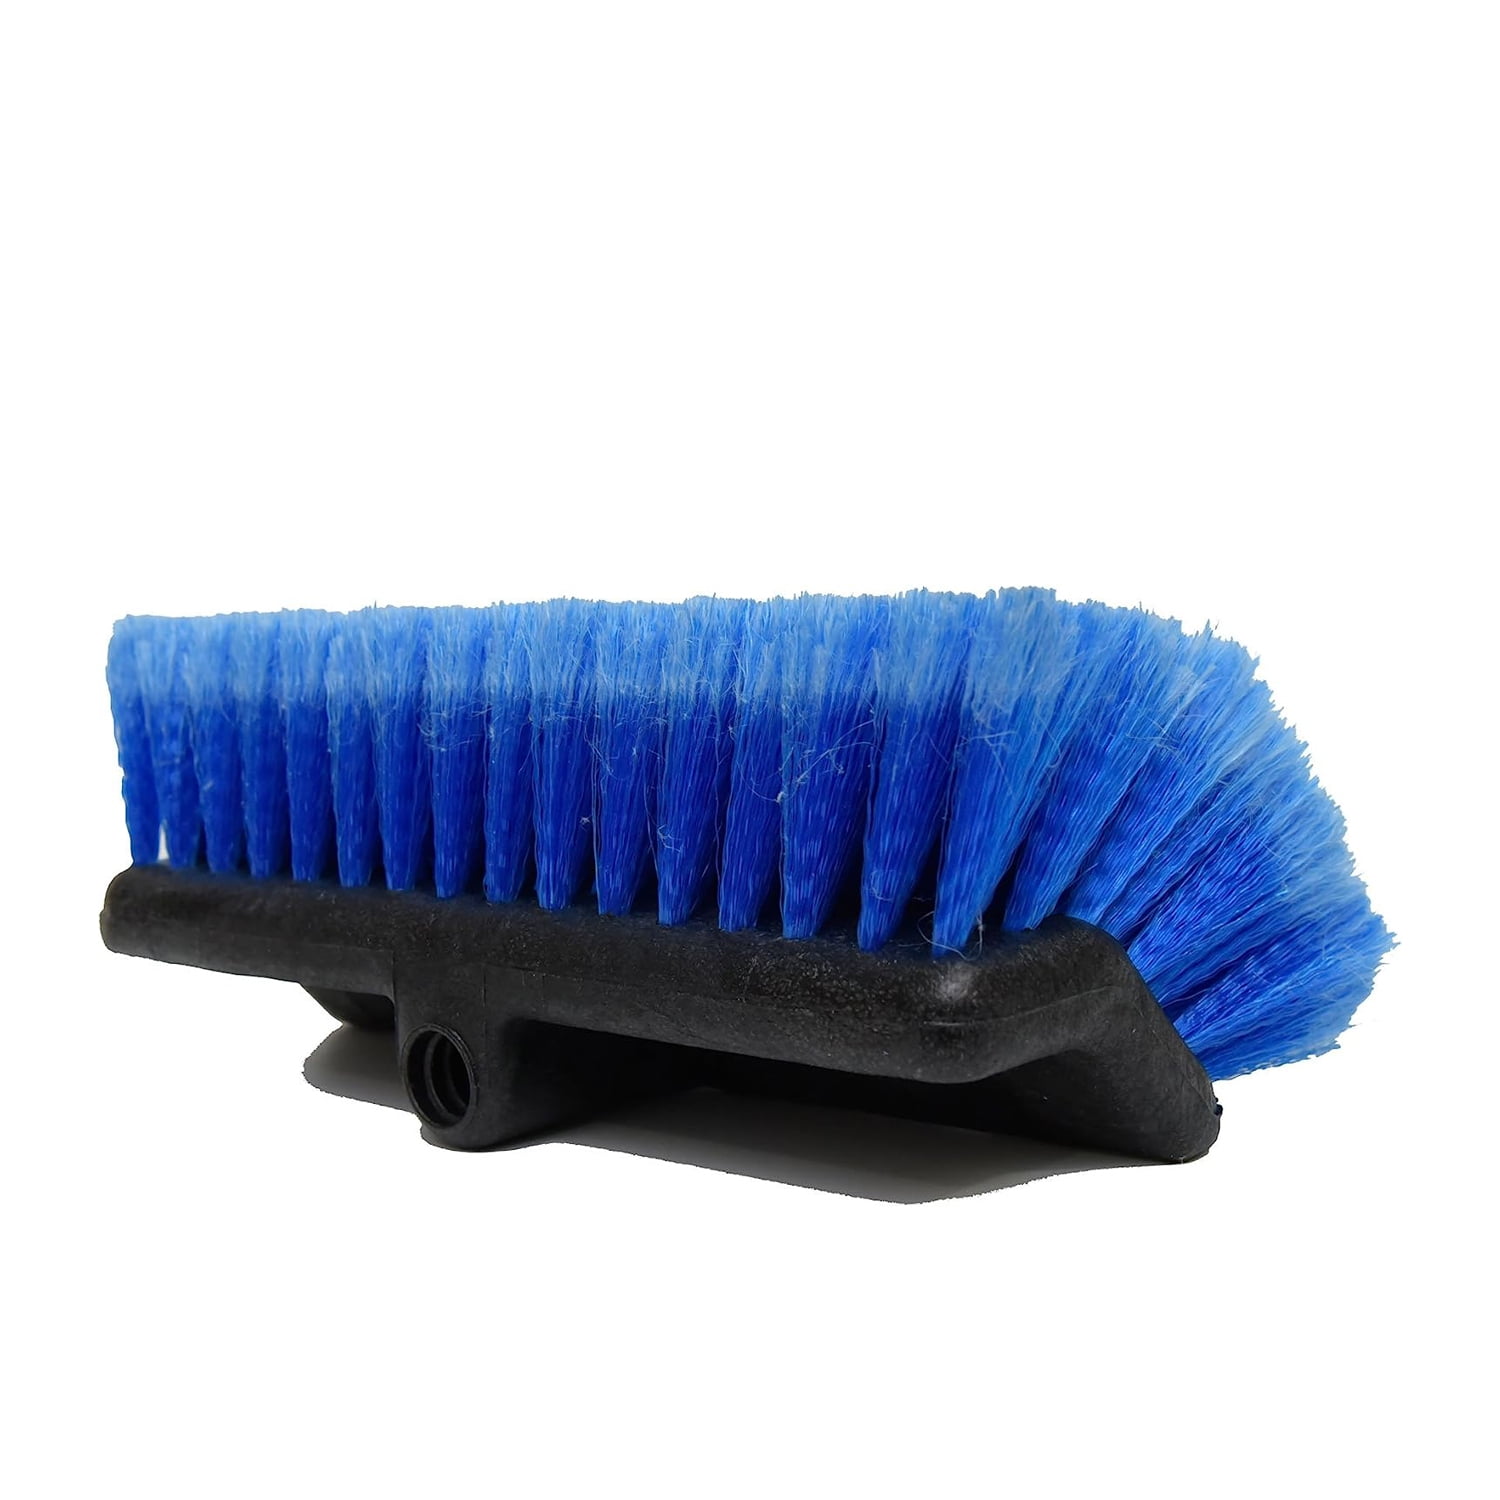 10.8 Flow-Thru Soft Car Wash Brush Head for Auto Cars RV SUV Deck Truck  Boat Ho